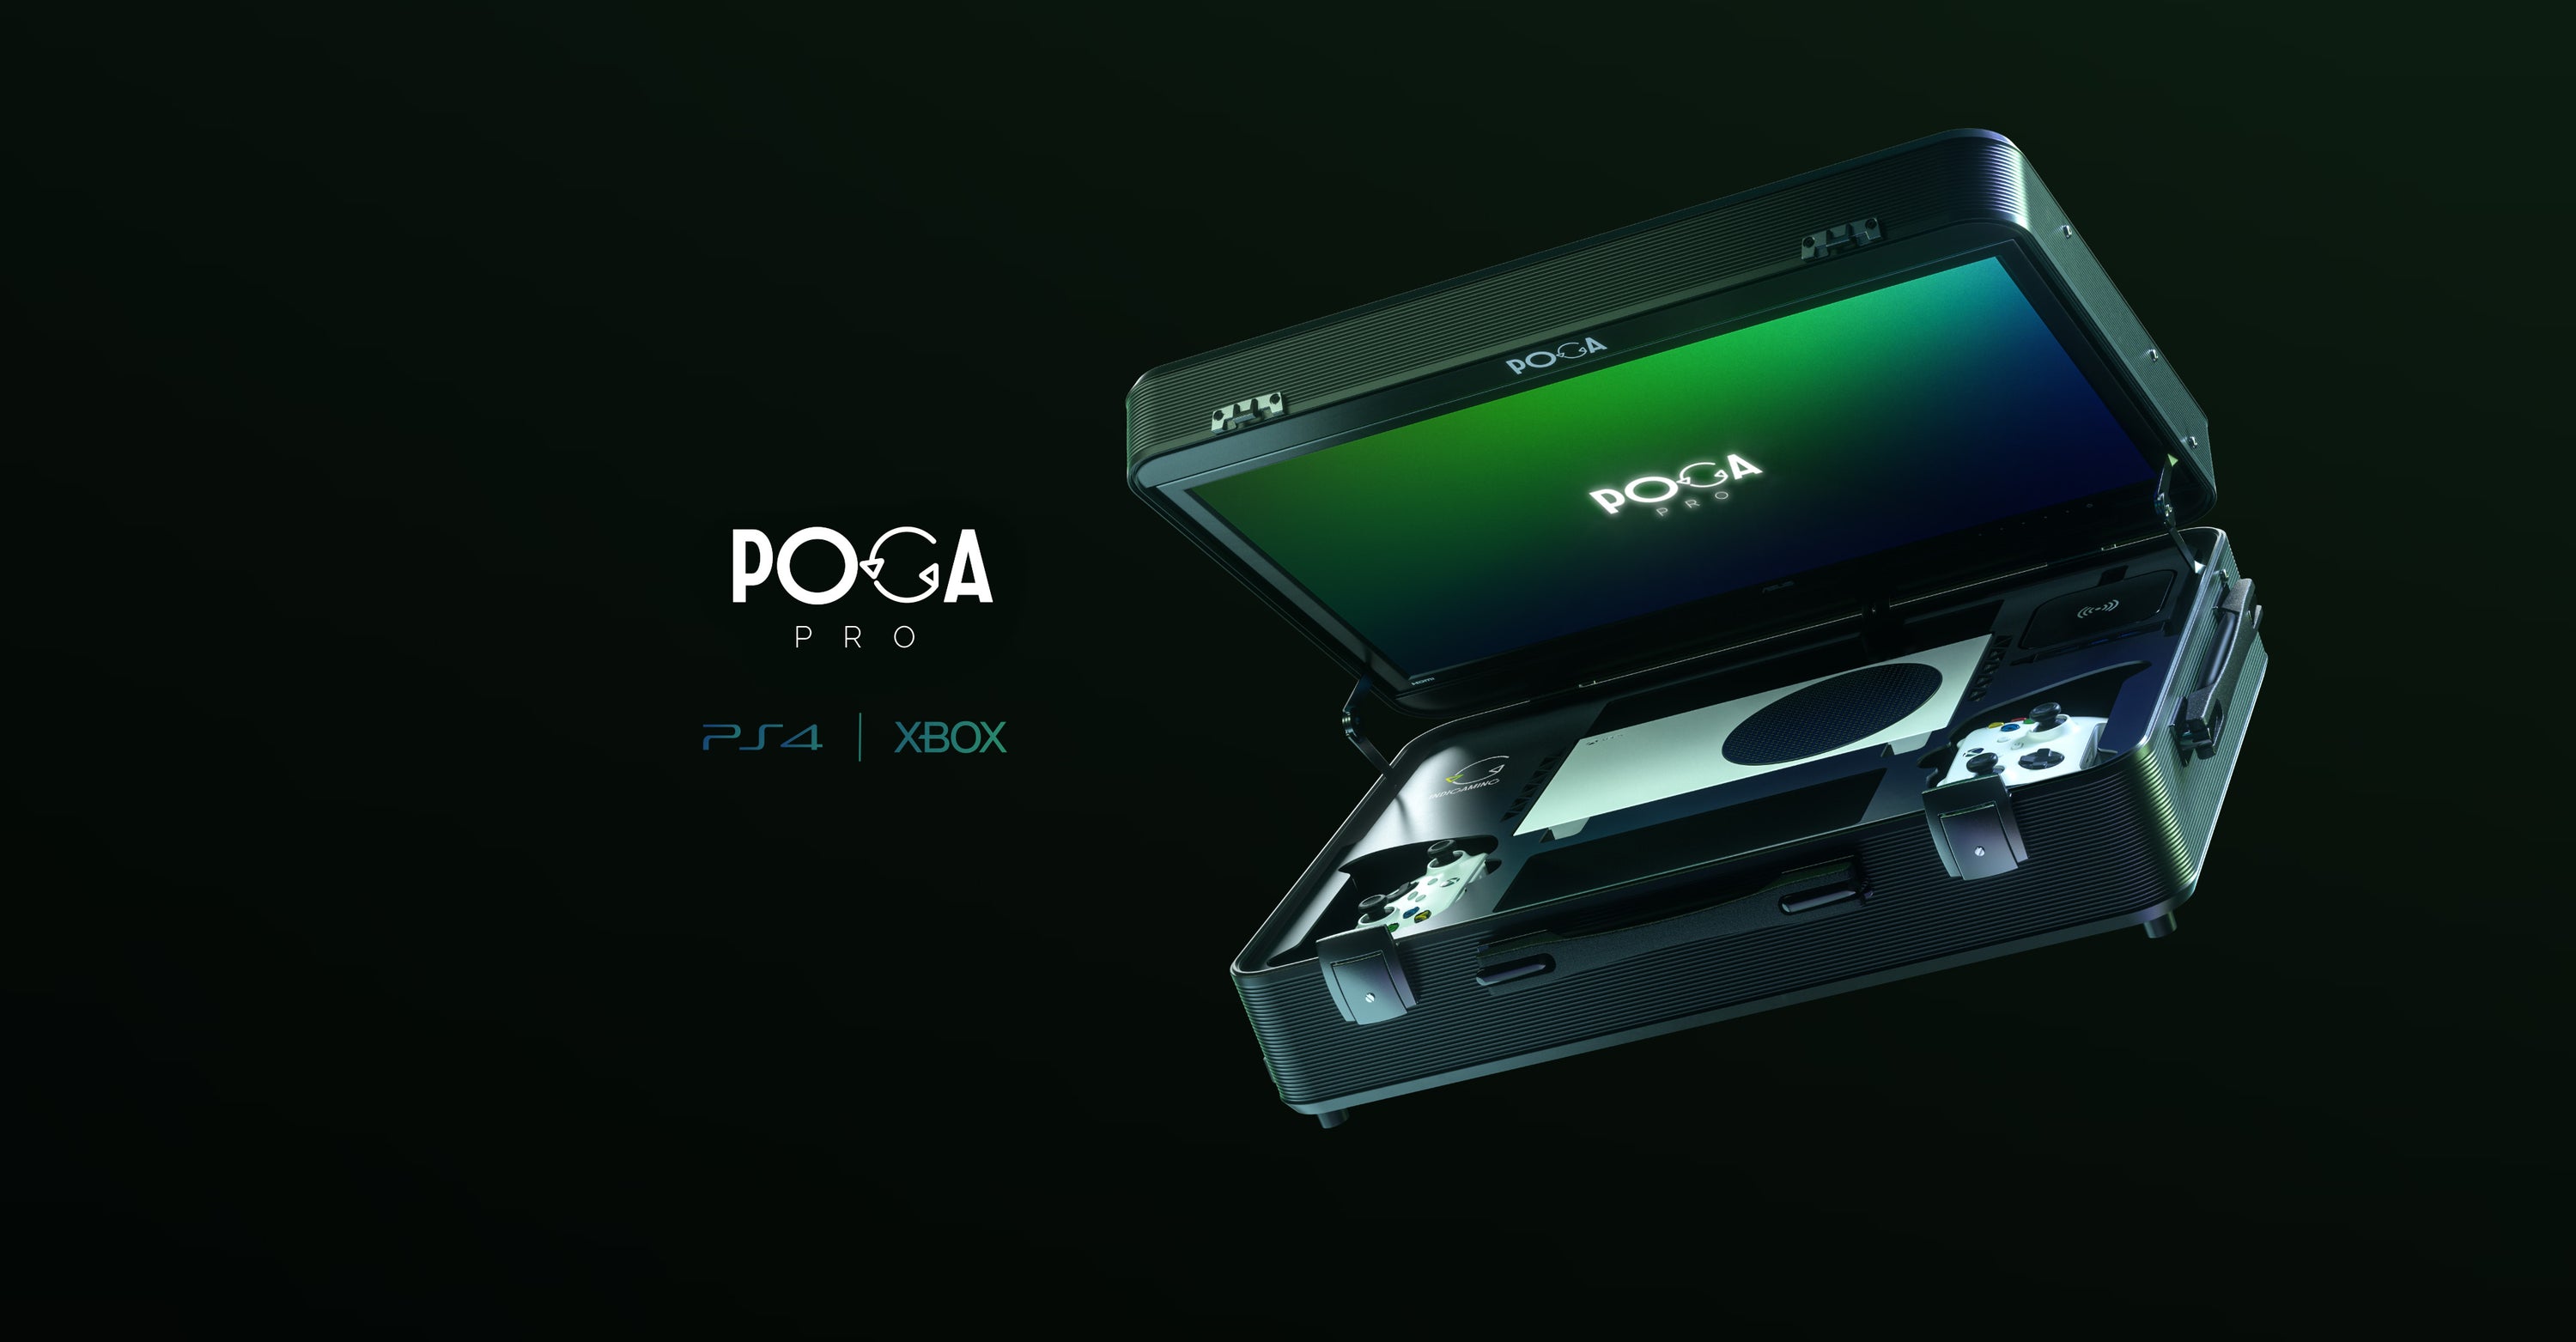 POGA Arc (Noir) - Accessoires PS4 - Garantie 3 ans LDLC